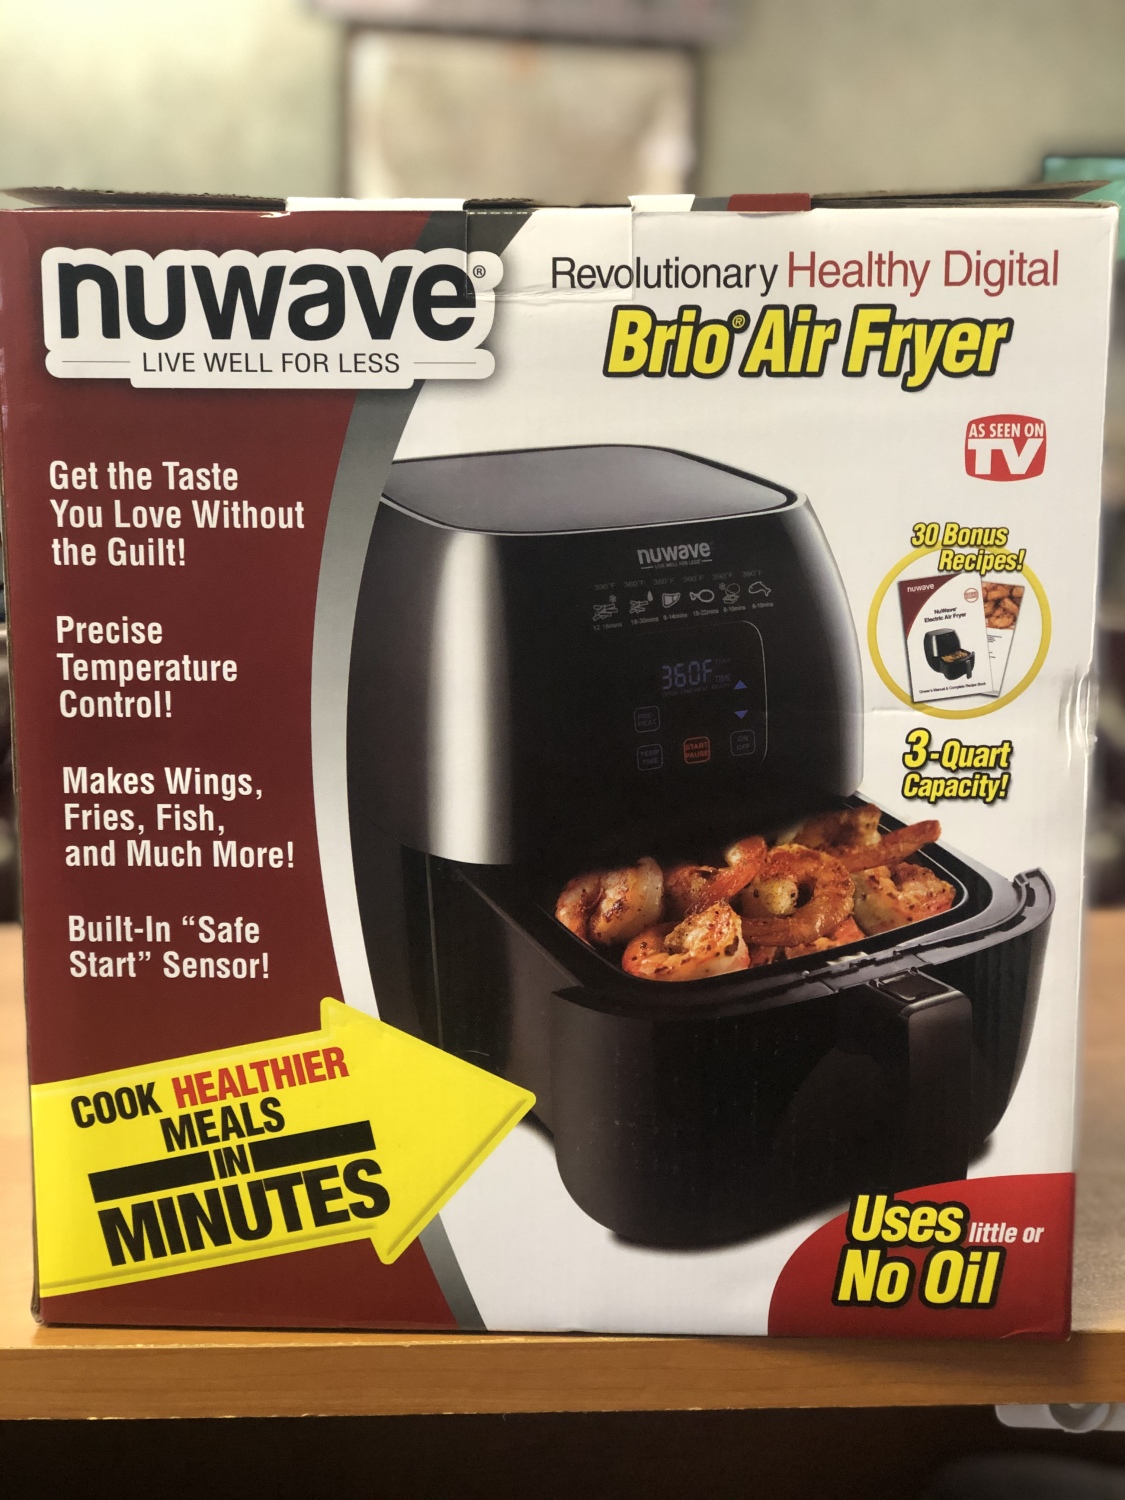 NuWave 3-qt. Digital Air Fryer As Seen on TV